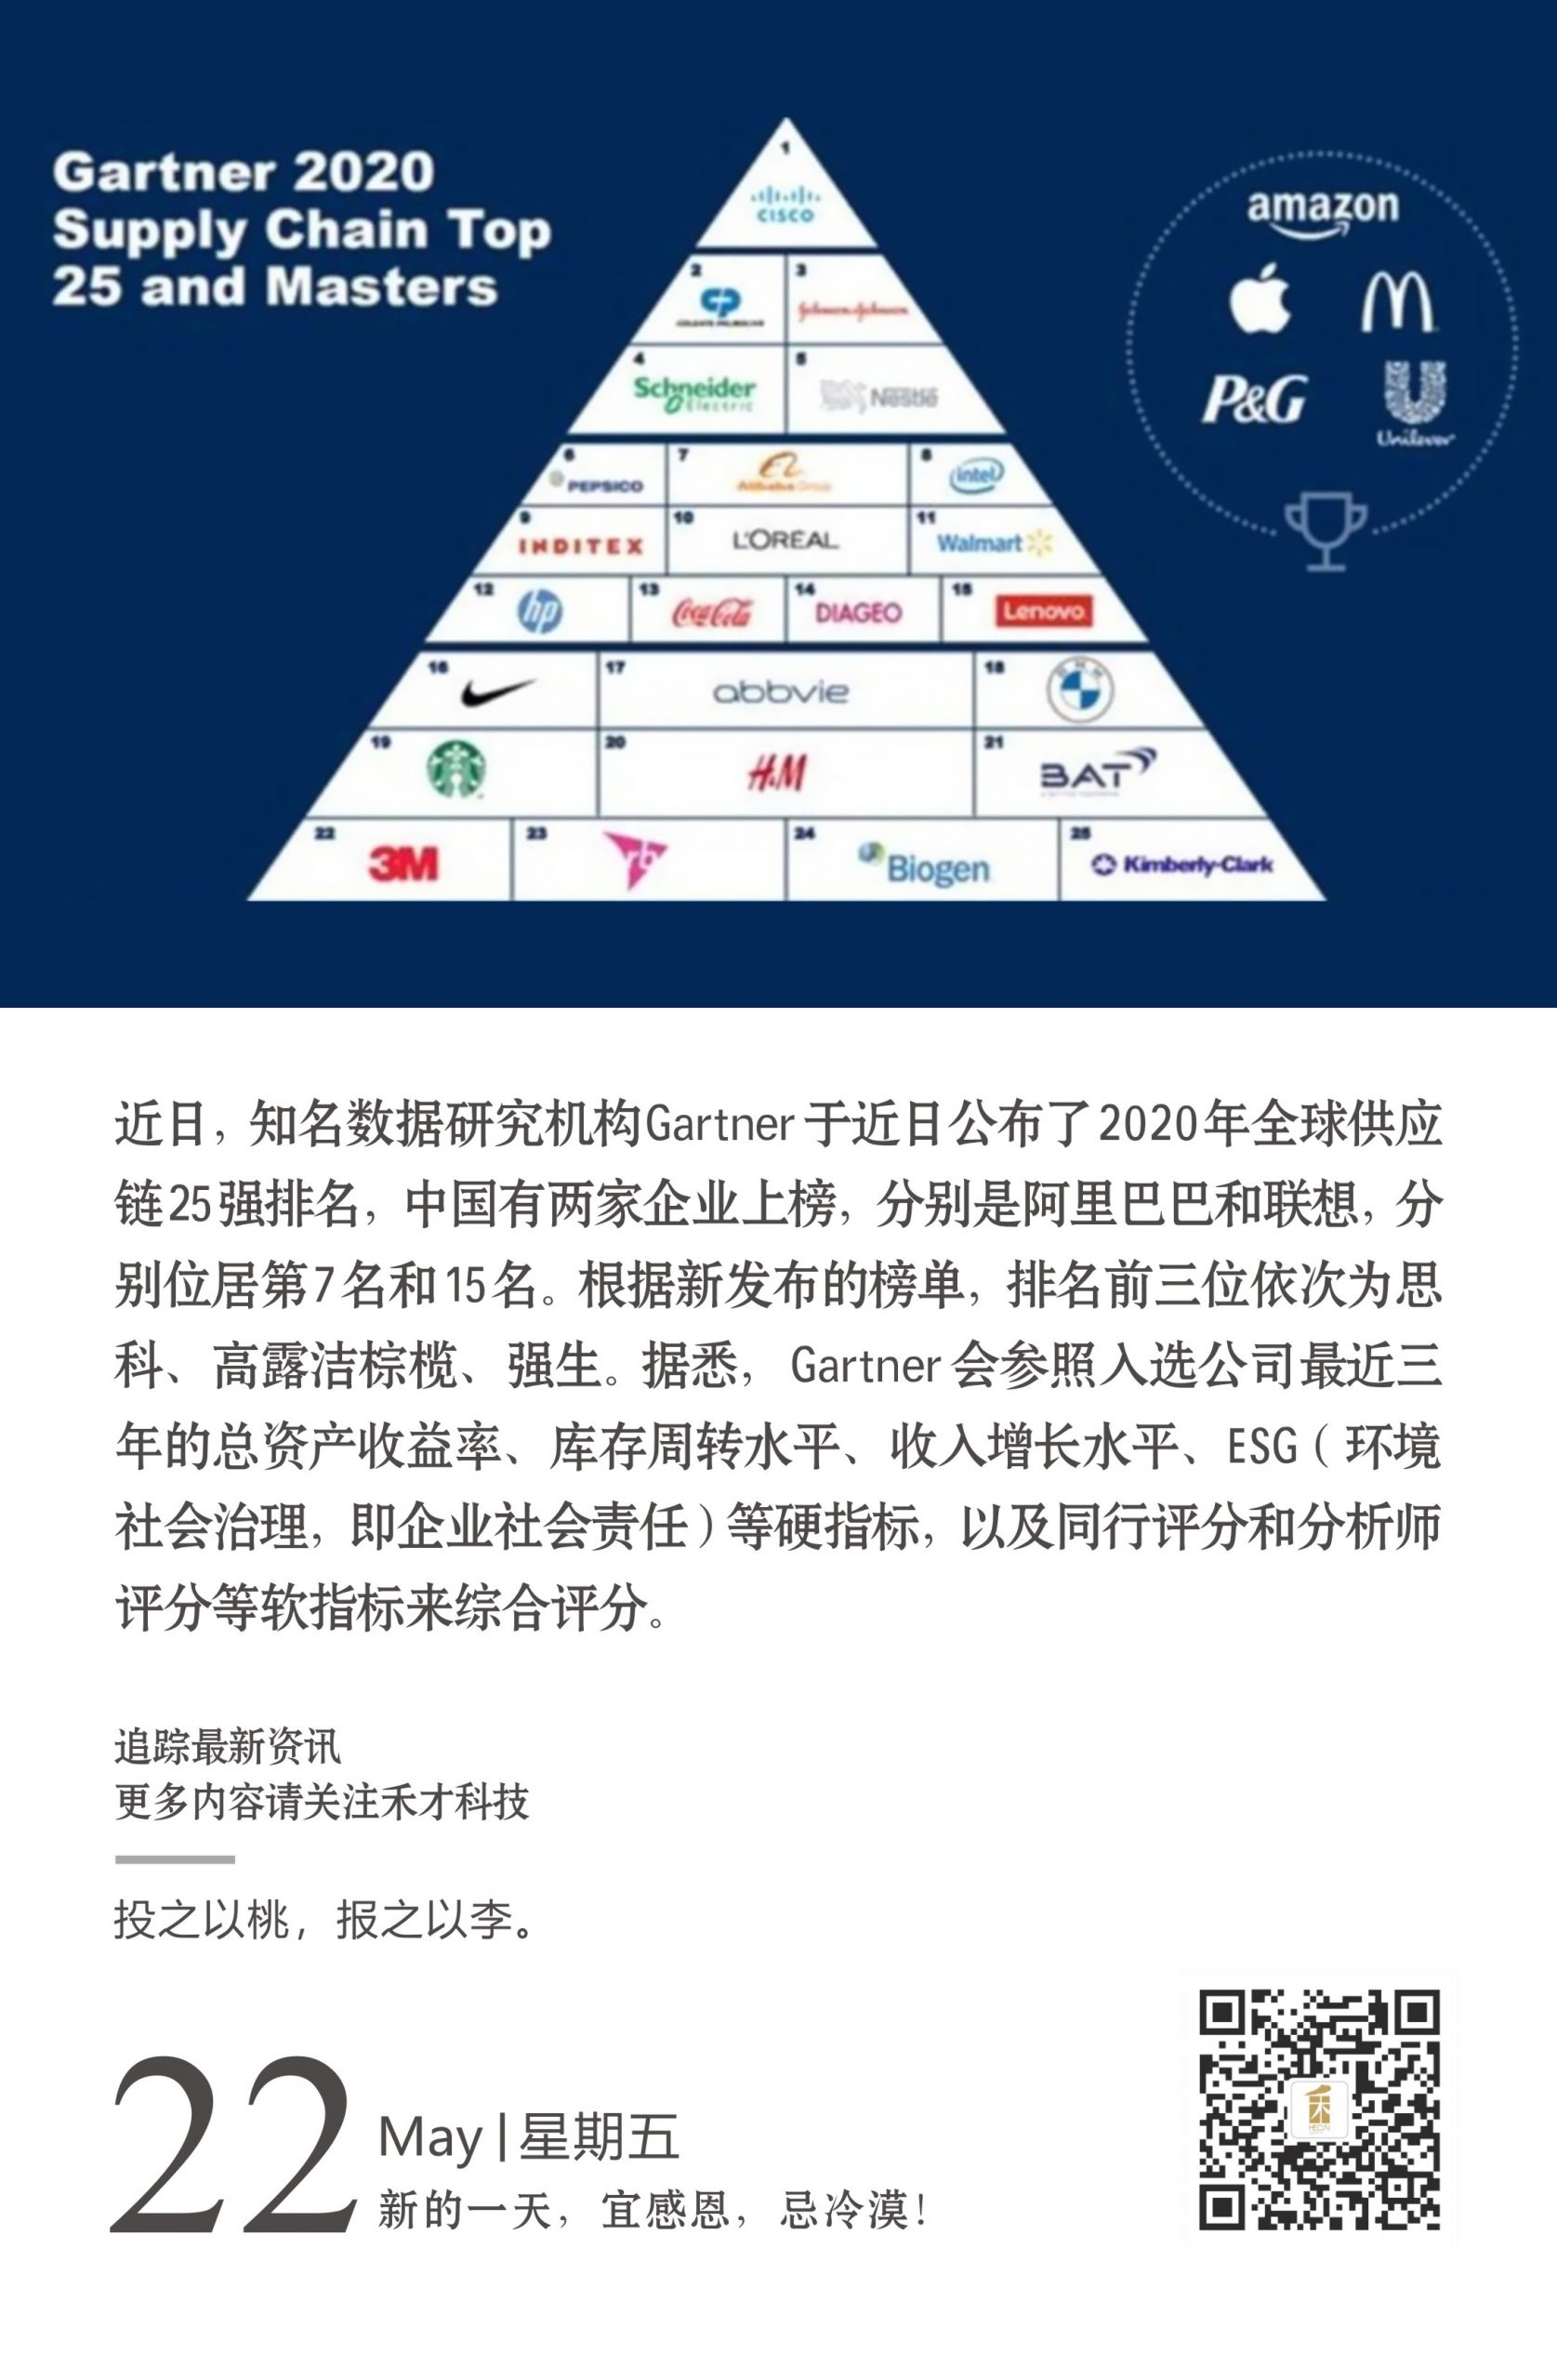 5.22快讯：全球供应链TOP25发布，中国企业阿里巴巴、联想上榜。